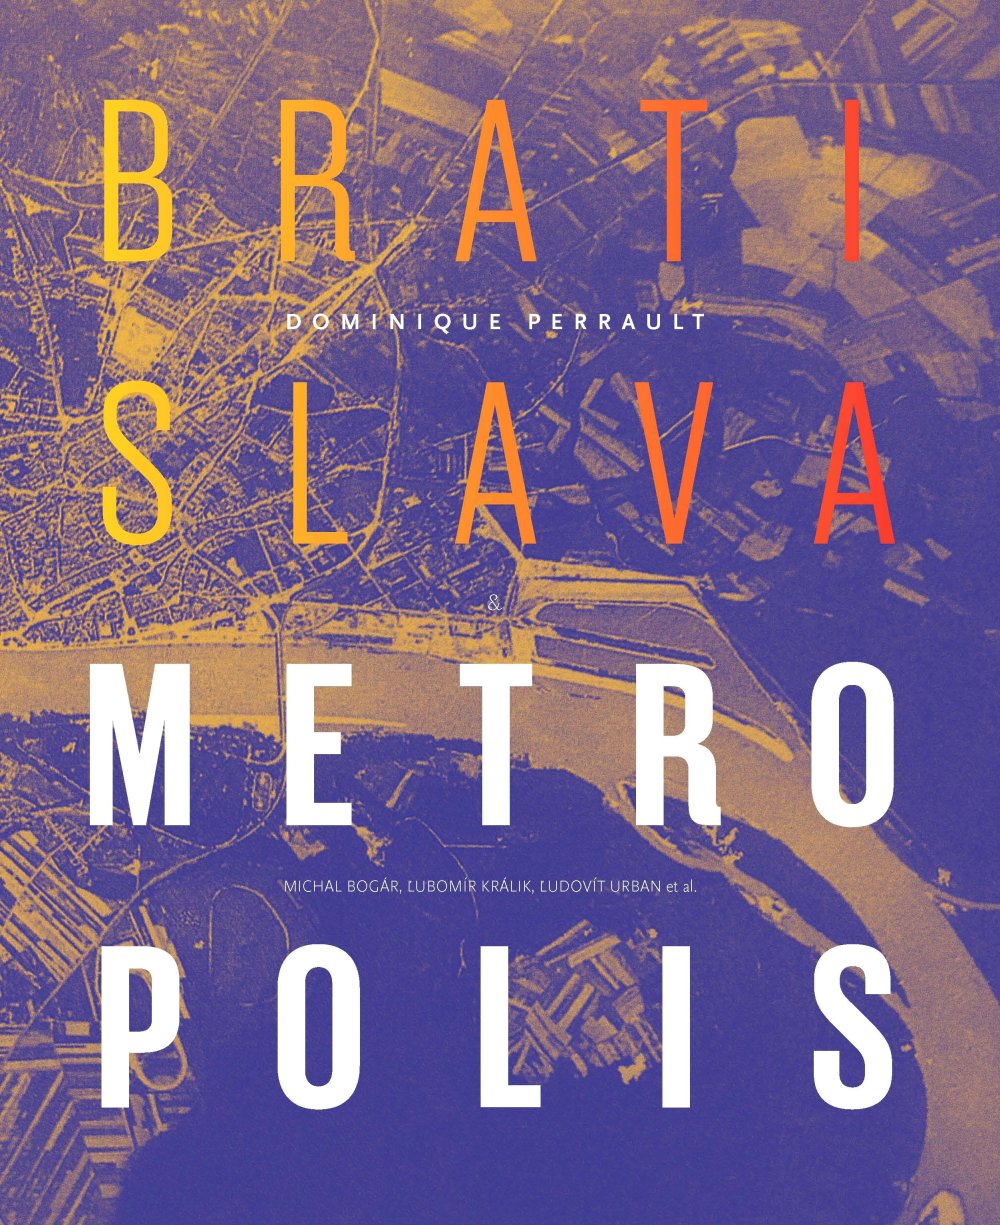 Obálka knihy, ktorú spoločne vydali Michal Bogár, Ľubomír Králik, Ľudovít urban a Dominique Perrault